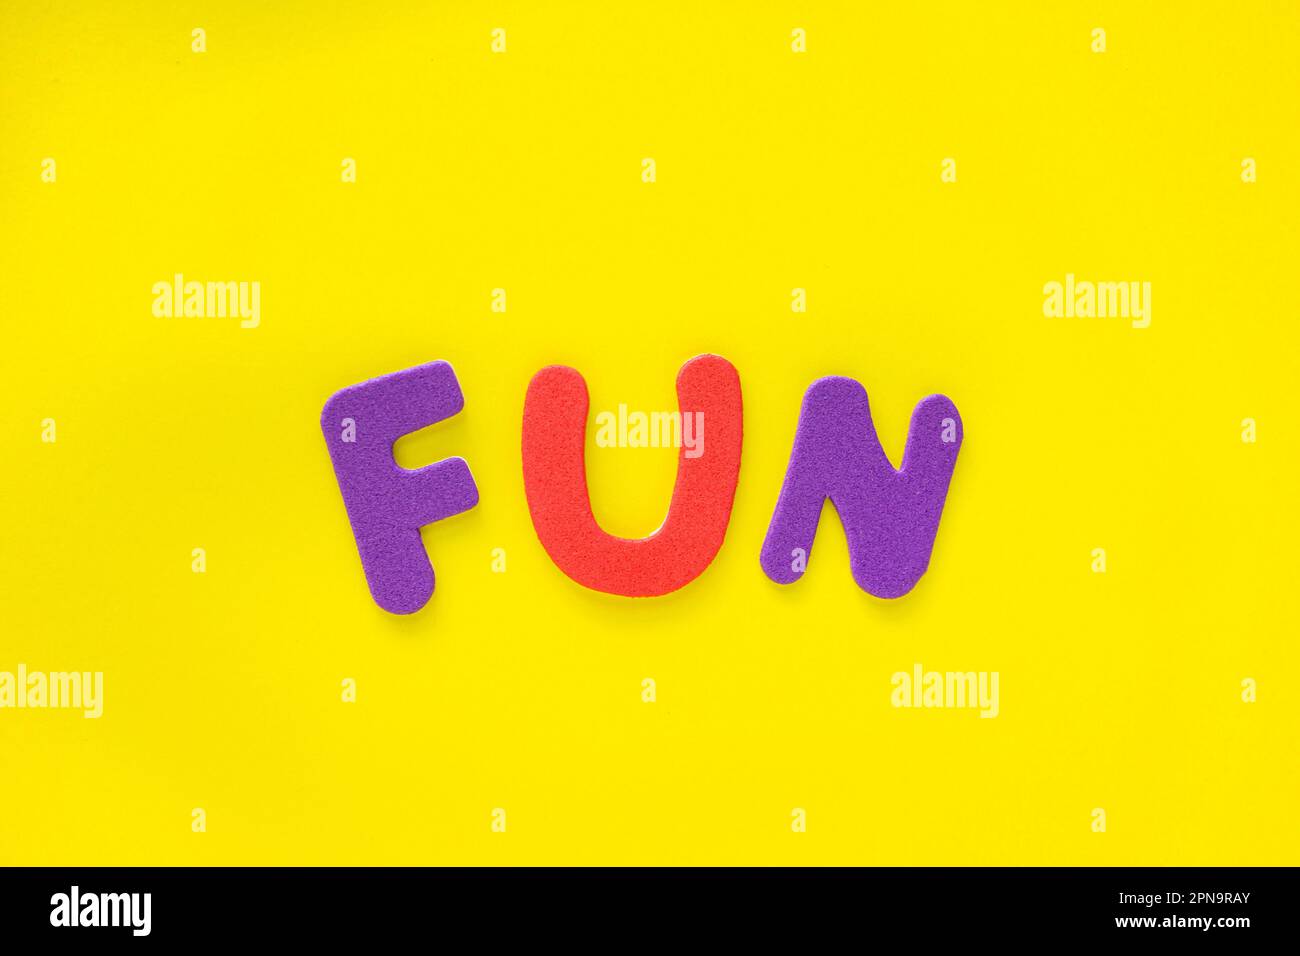 Farbiges Wort mit TEXTSPASS auf gelbem Hintergrund mit Kopierbereich. Farbige alphabetische Wörter bilden das Wort Spaß. Stockfoto